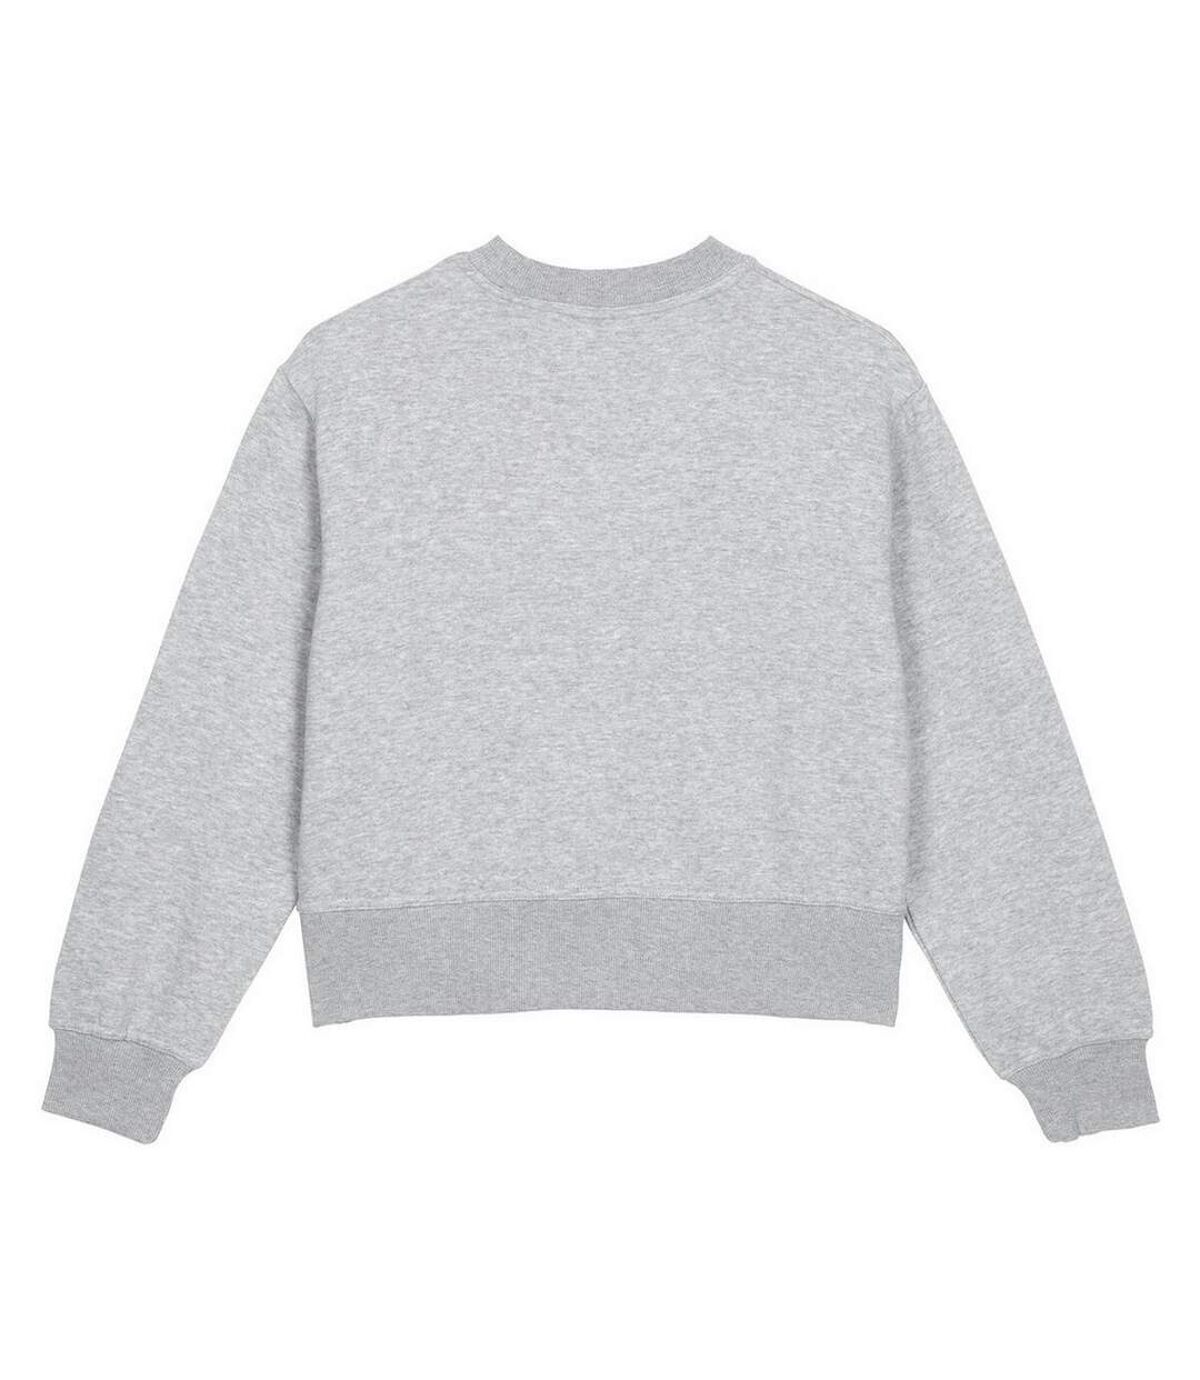 Umbro Womens/Ladies Core Boxy Sweatshirt (Grey Marl/White)